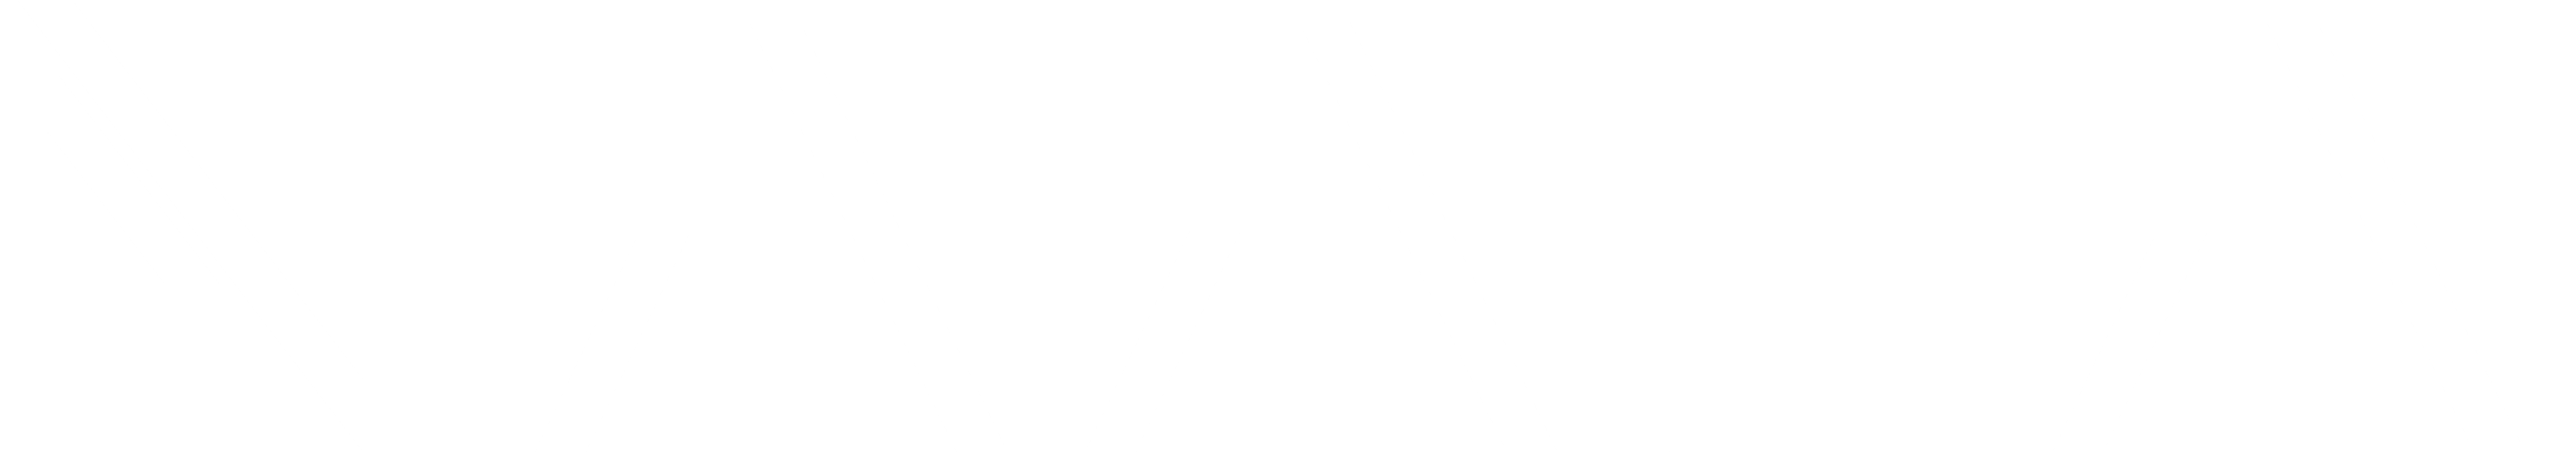 NAALA logo wit - zonder